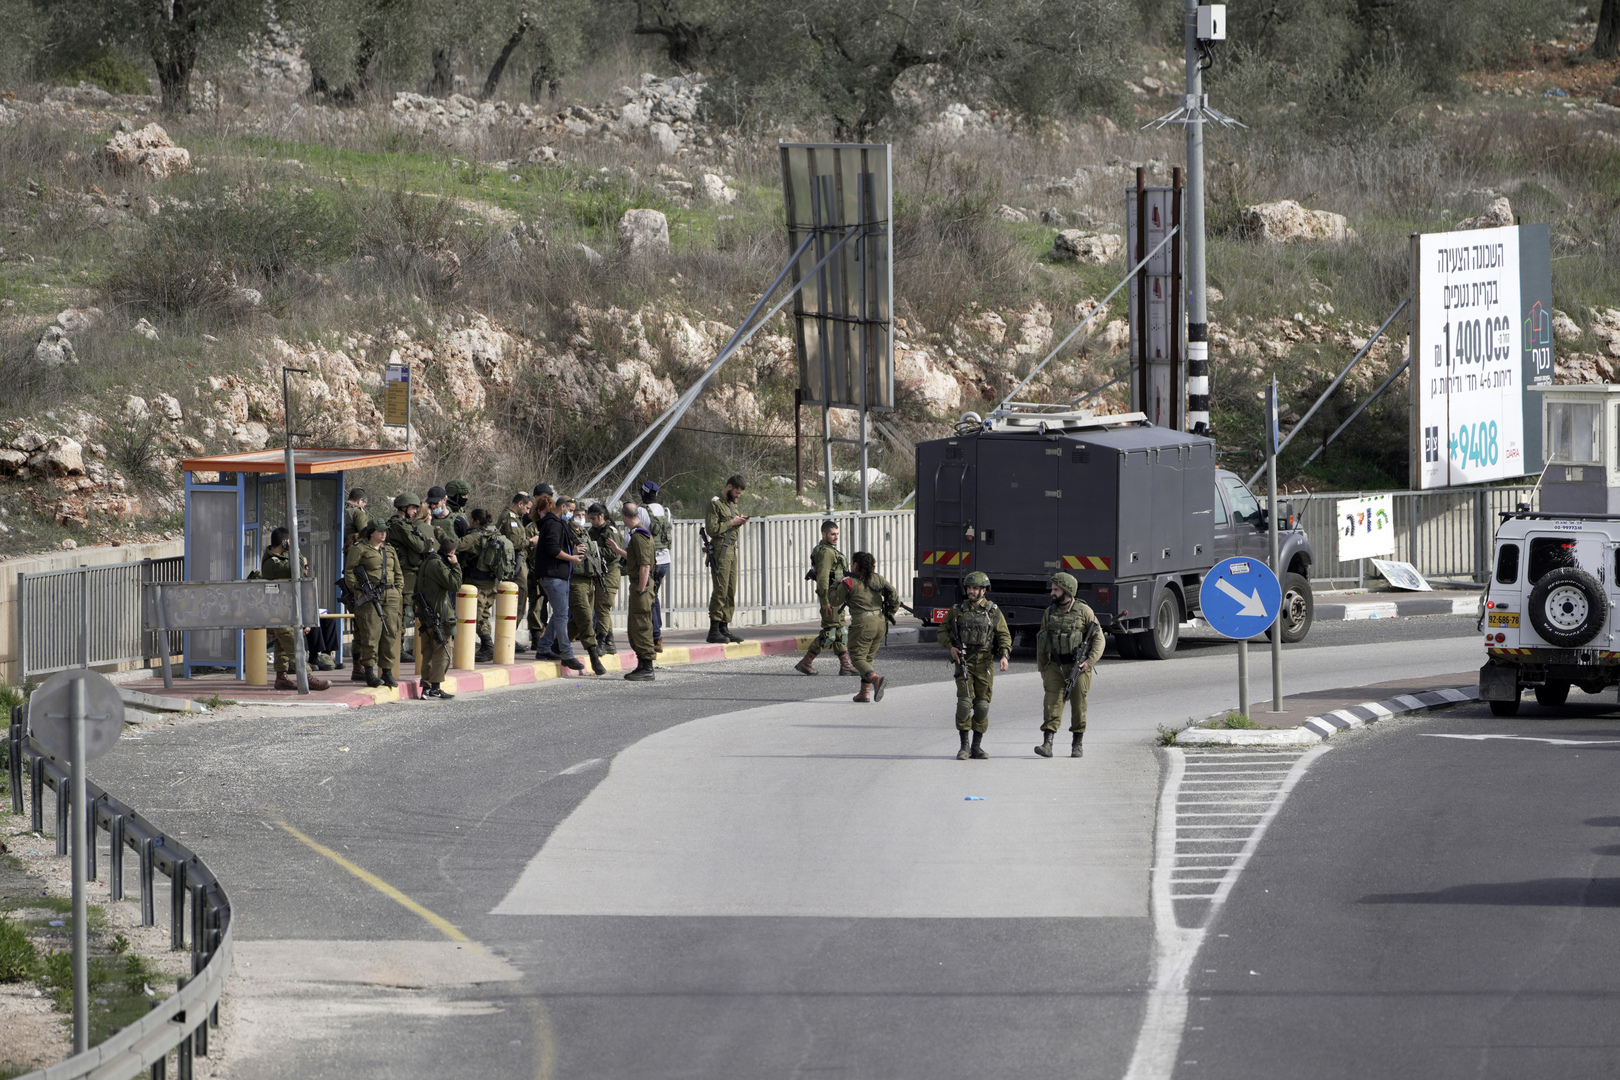 الجيش الإسرائيلي يطلق النار على فلسطيني بدعوى محاولته تنفيذ عملية طعن (فيديوهات)